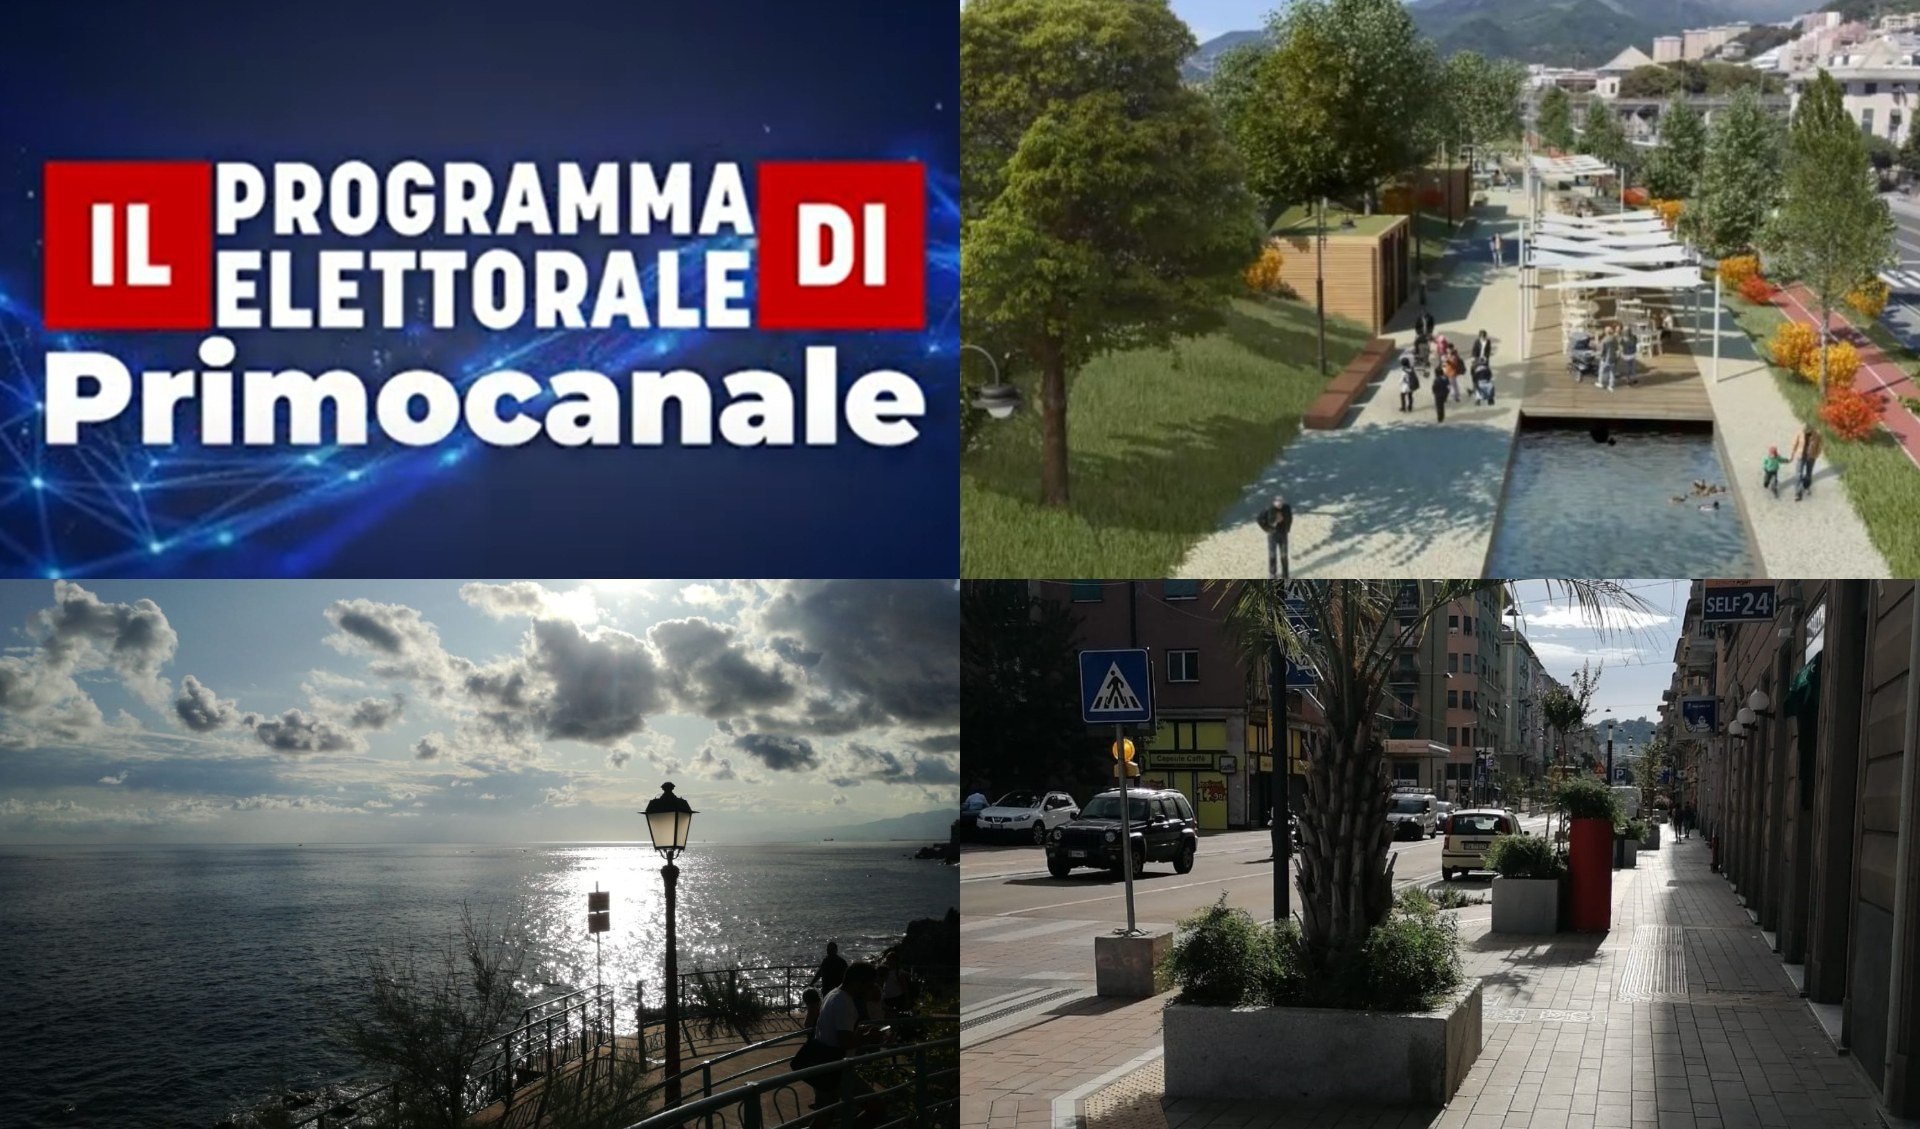 Il Programma elettorale di Primocanale - Viaggio tra i municipi di Genova